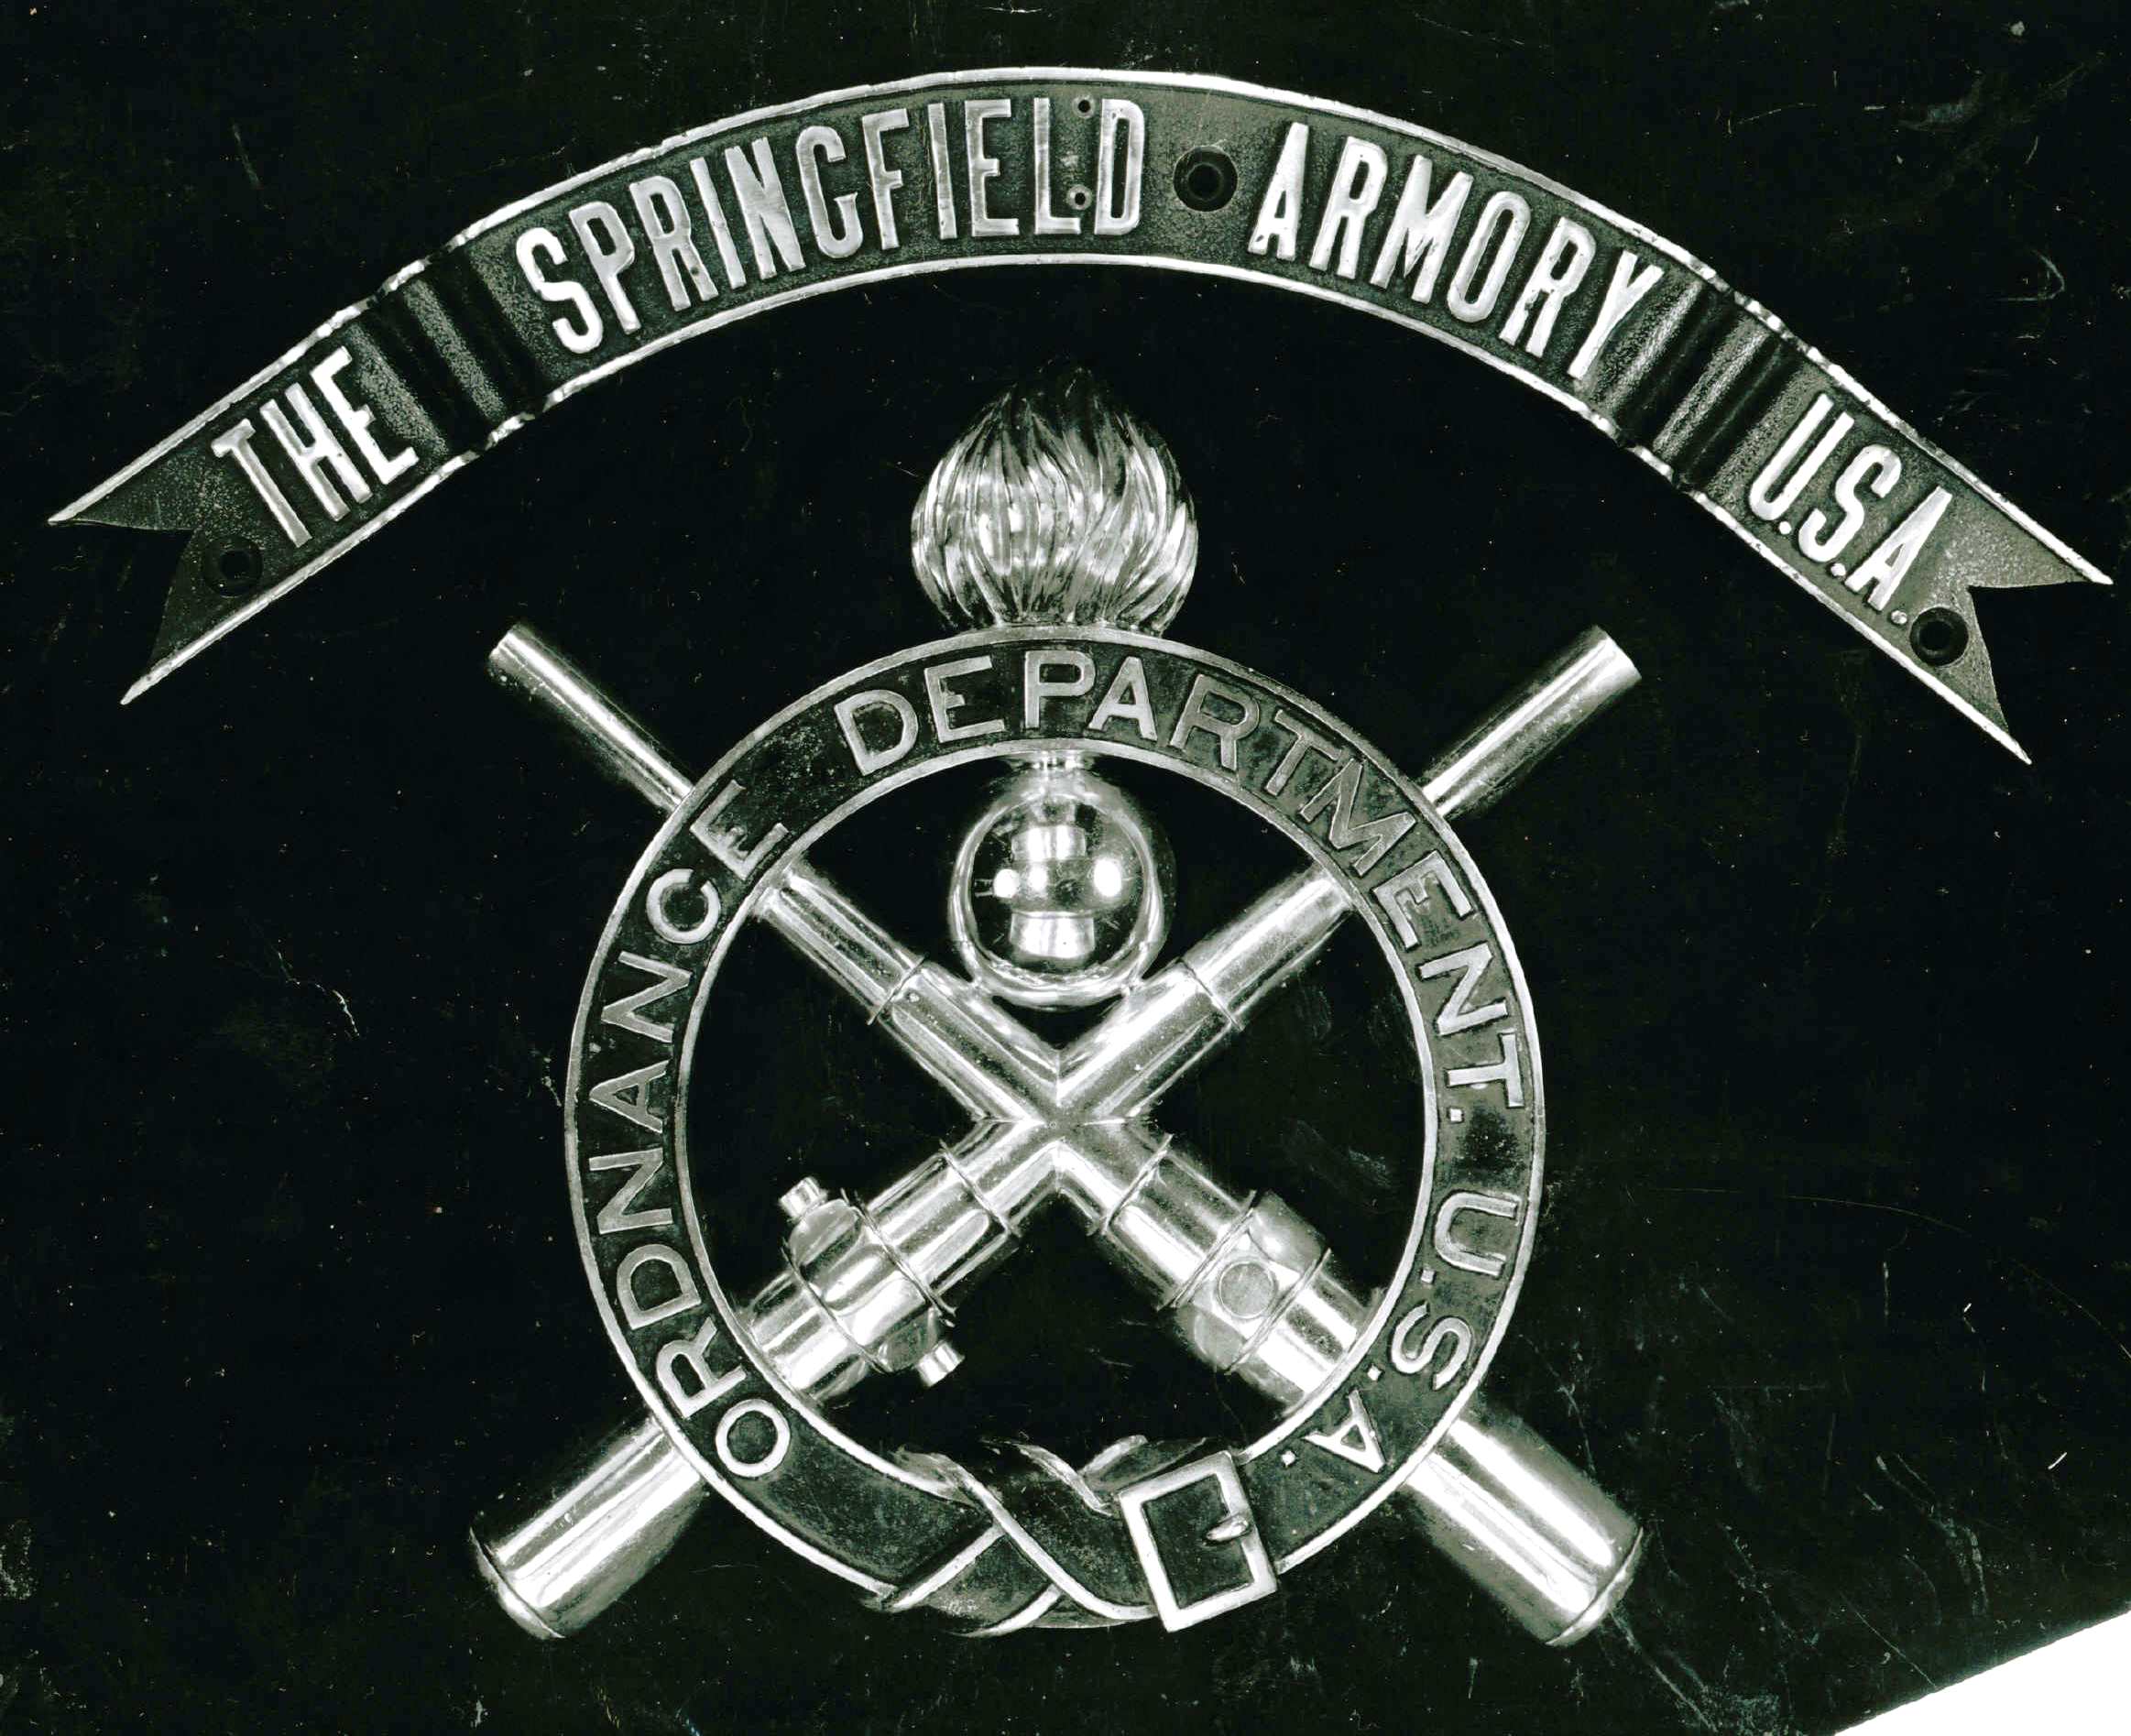 Springfield Armory Firearms Logo - Springfield armory Logos